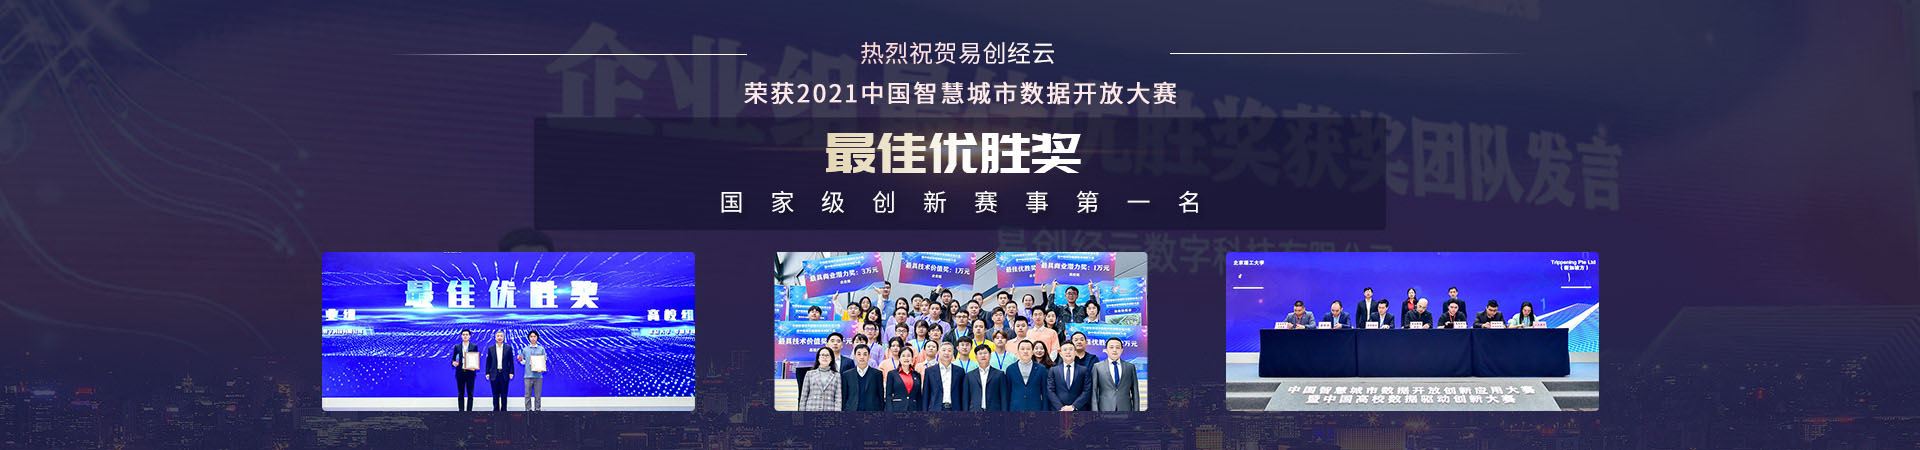 米乐|米乐·M6中国智慧城市数据开放大赛获奖